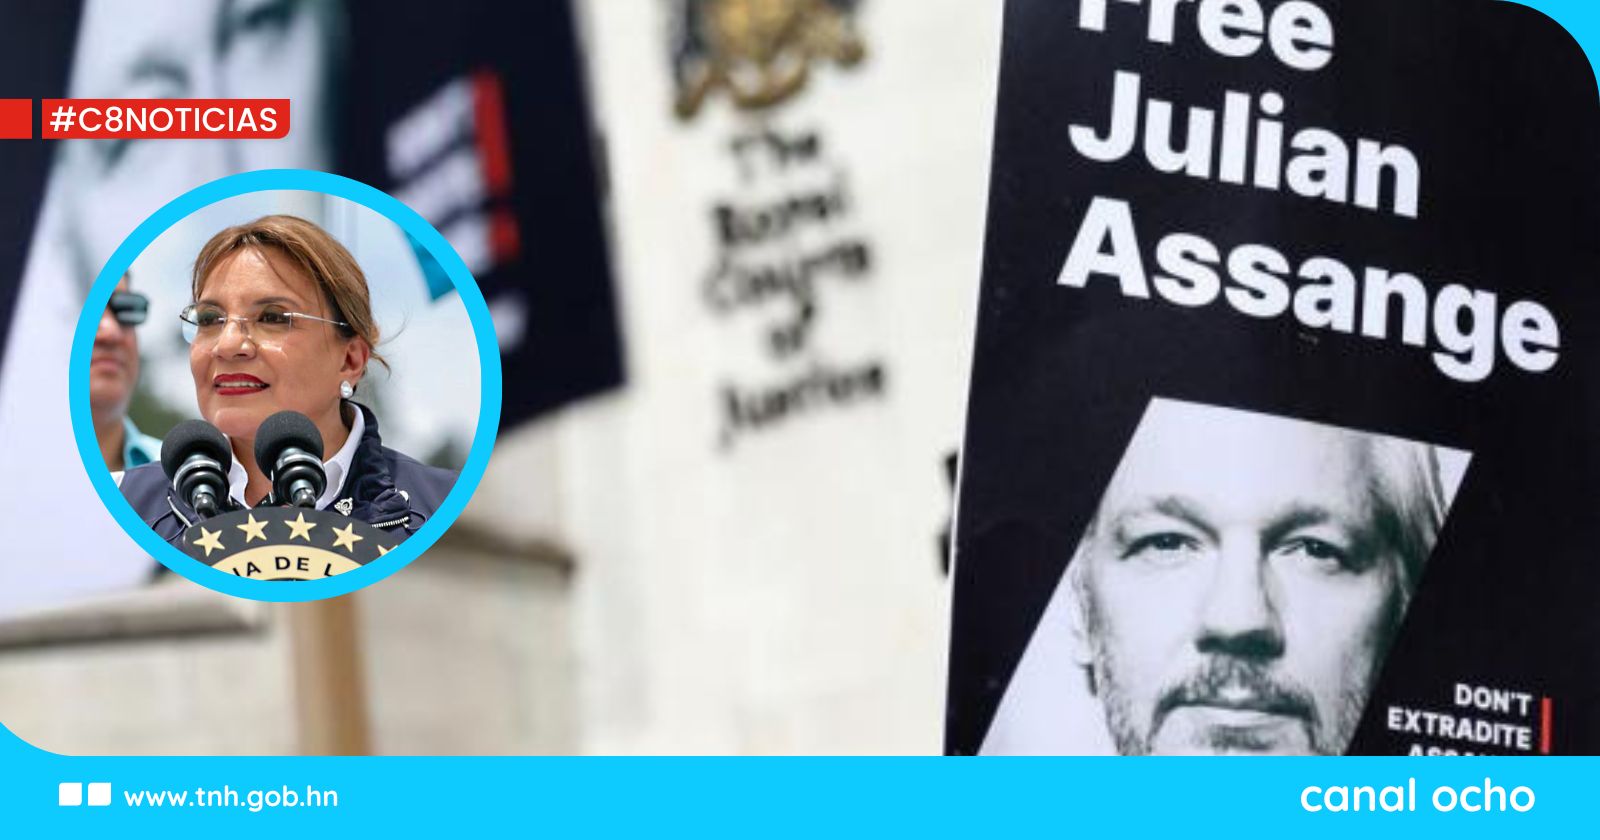 Liberación de Assange es reconocimiento a lucha global por la información y la verdad, dice presidenta hondureña